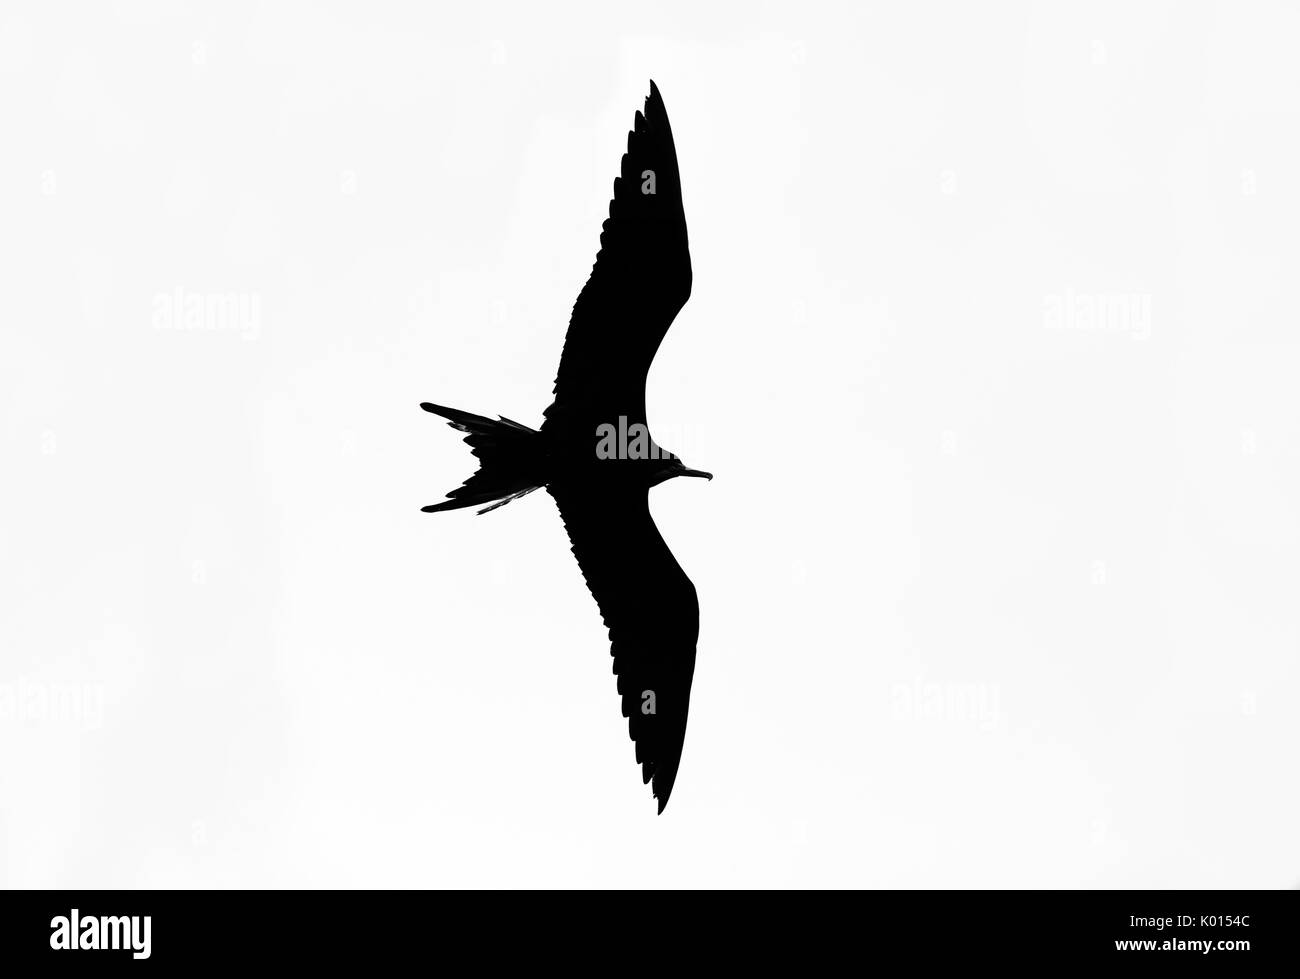 Vogel silhouette isoliert auf Weiss ist eine detaillierte gefiederte Vogel mit beiden Flügeln in vollem Flug Silhouette und auf einem weißen Hintergrund. Stockfoto